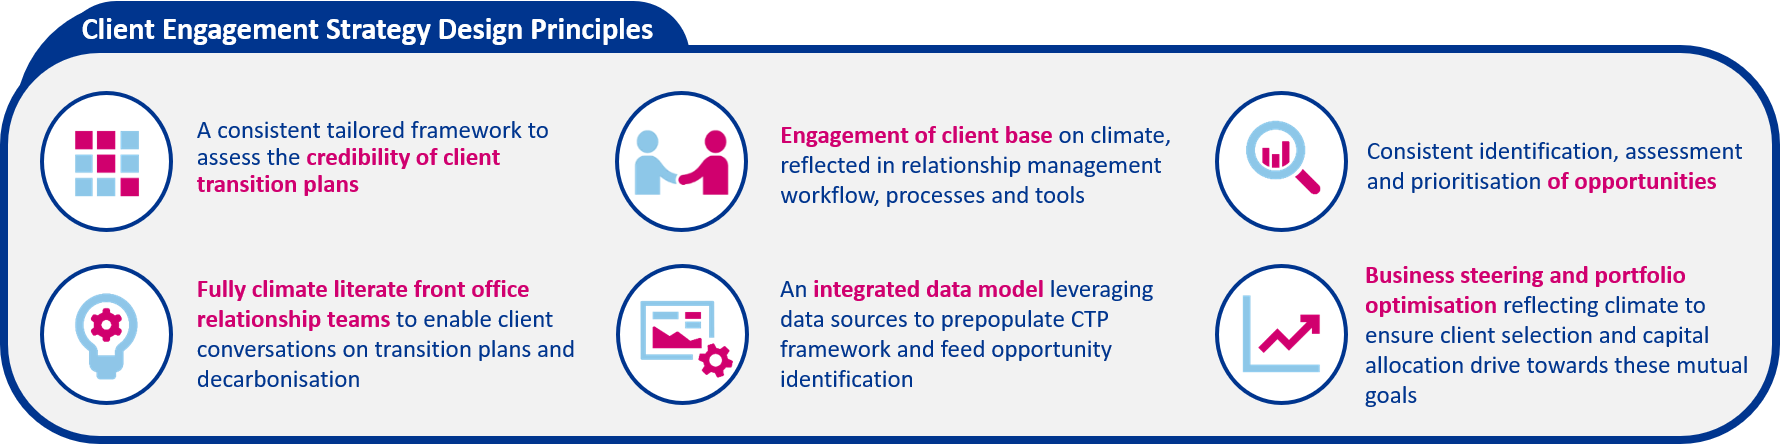 Client engagement strategy design principles